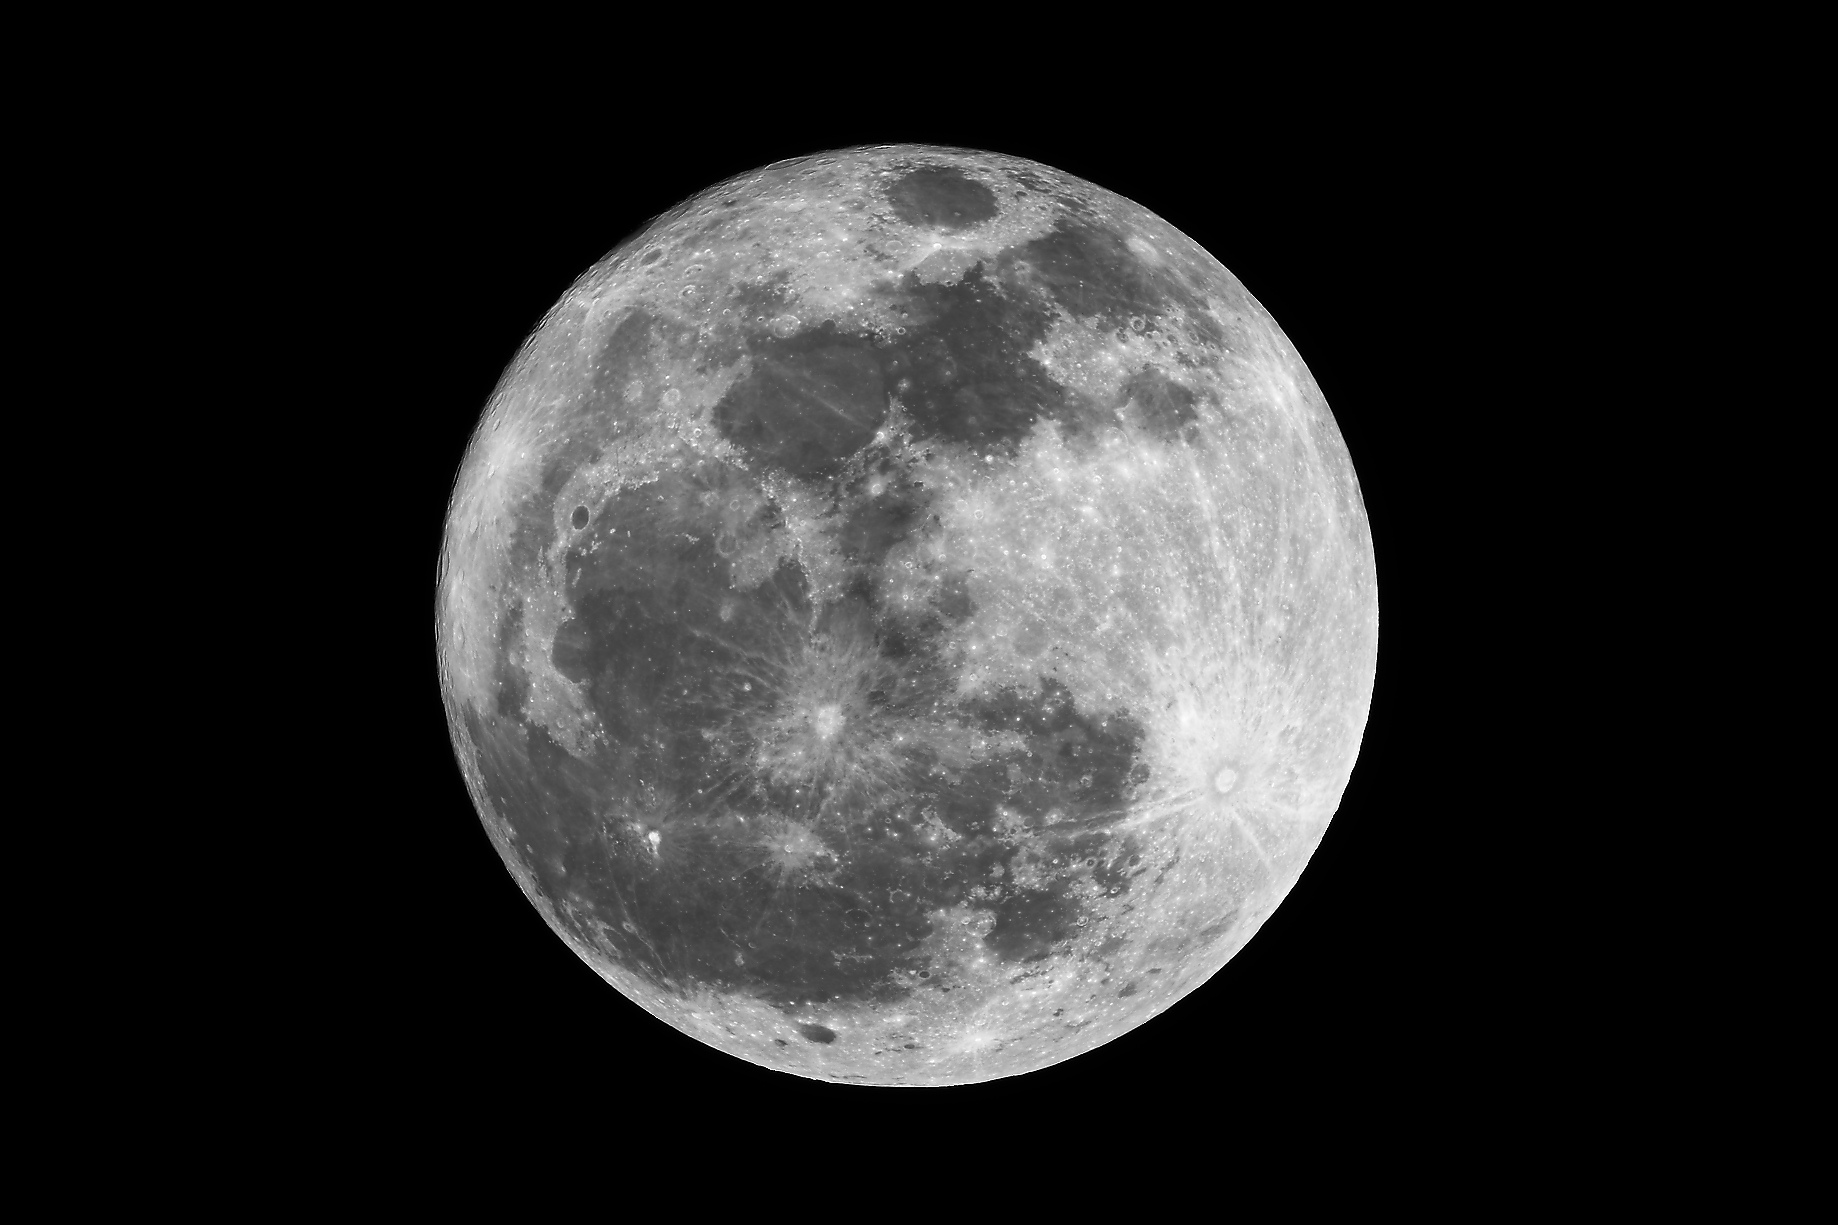 171006 - Pleine Lune - Pollux - STL11K